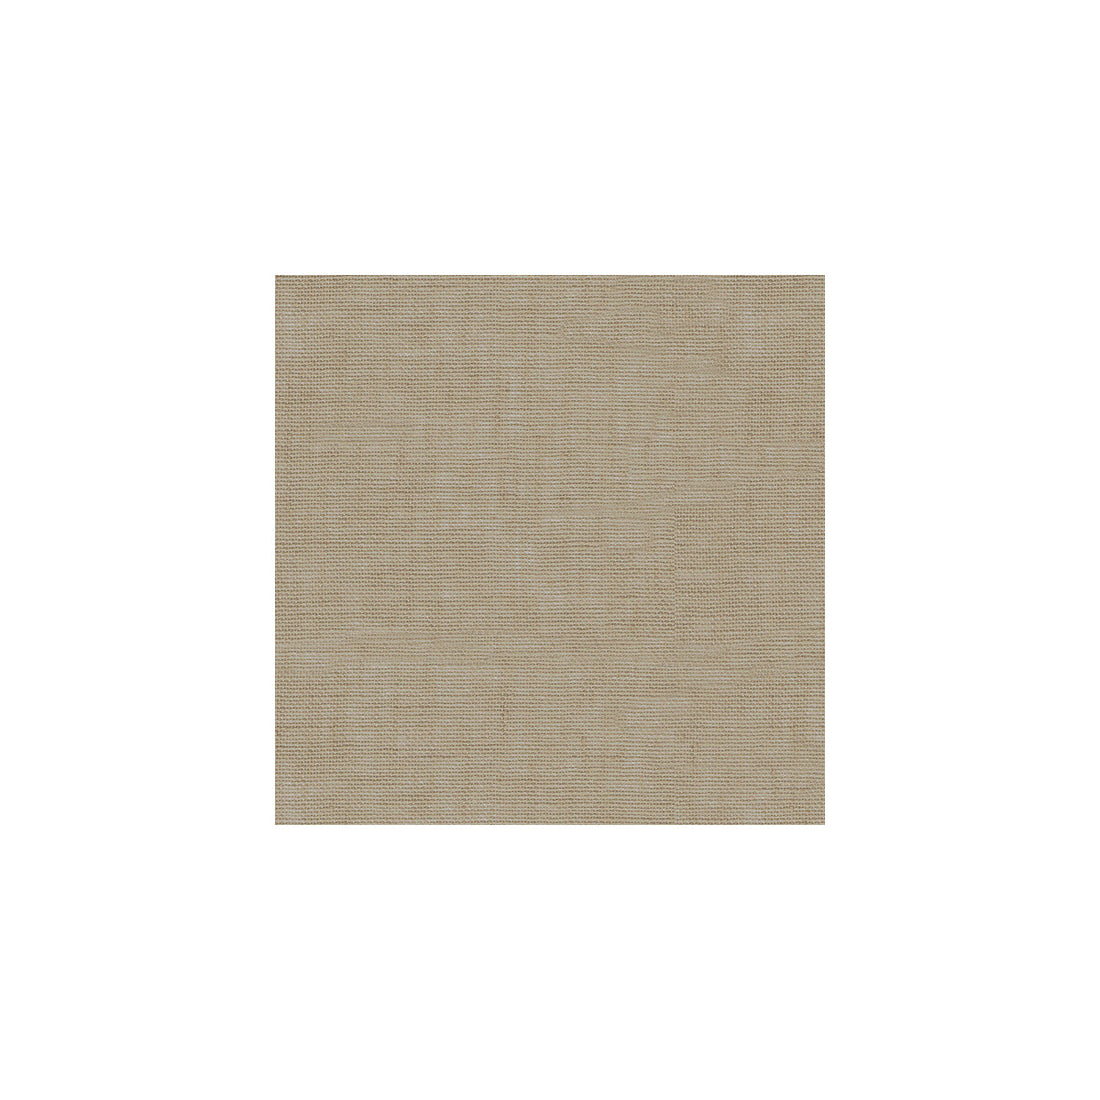 Kravet Basics fabric in 3582-106 color - pattern 3582.106.0 - by Kravet Basics